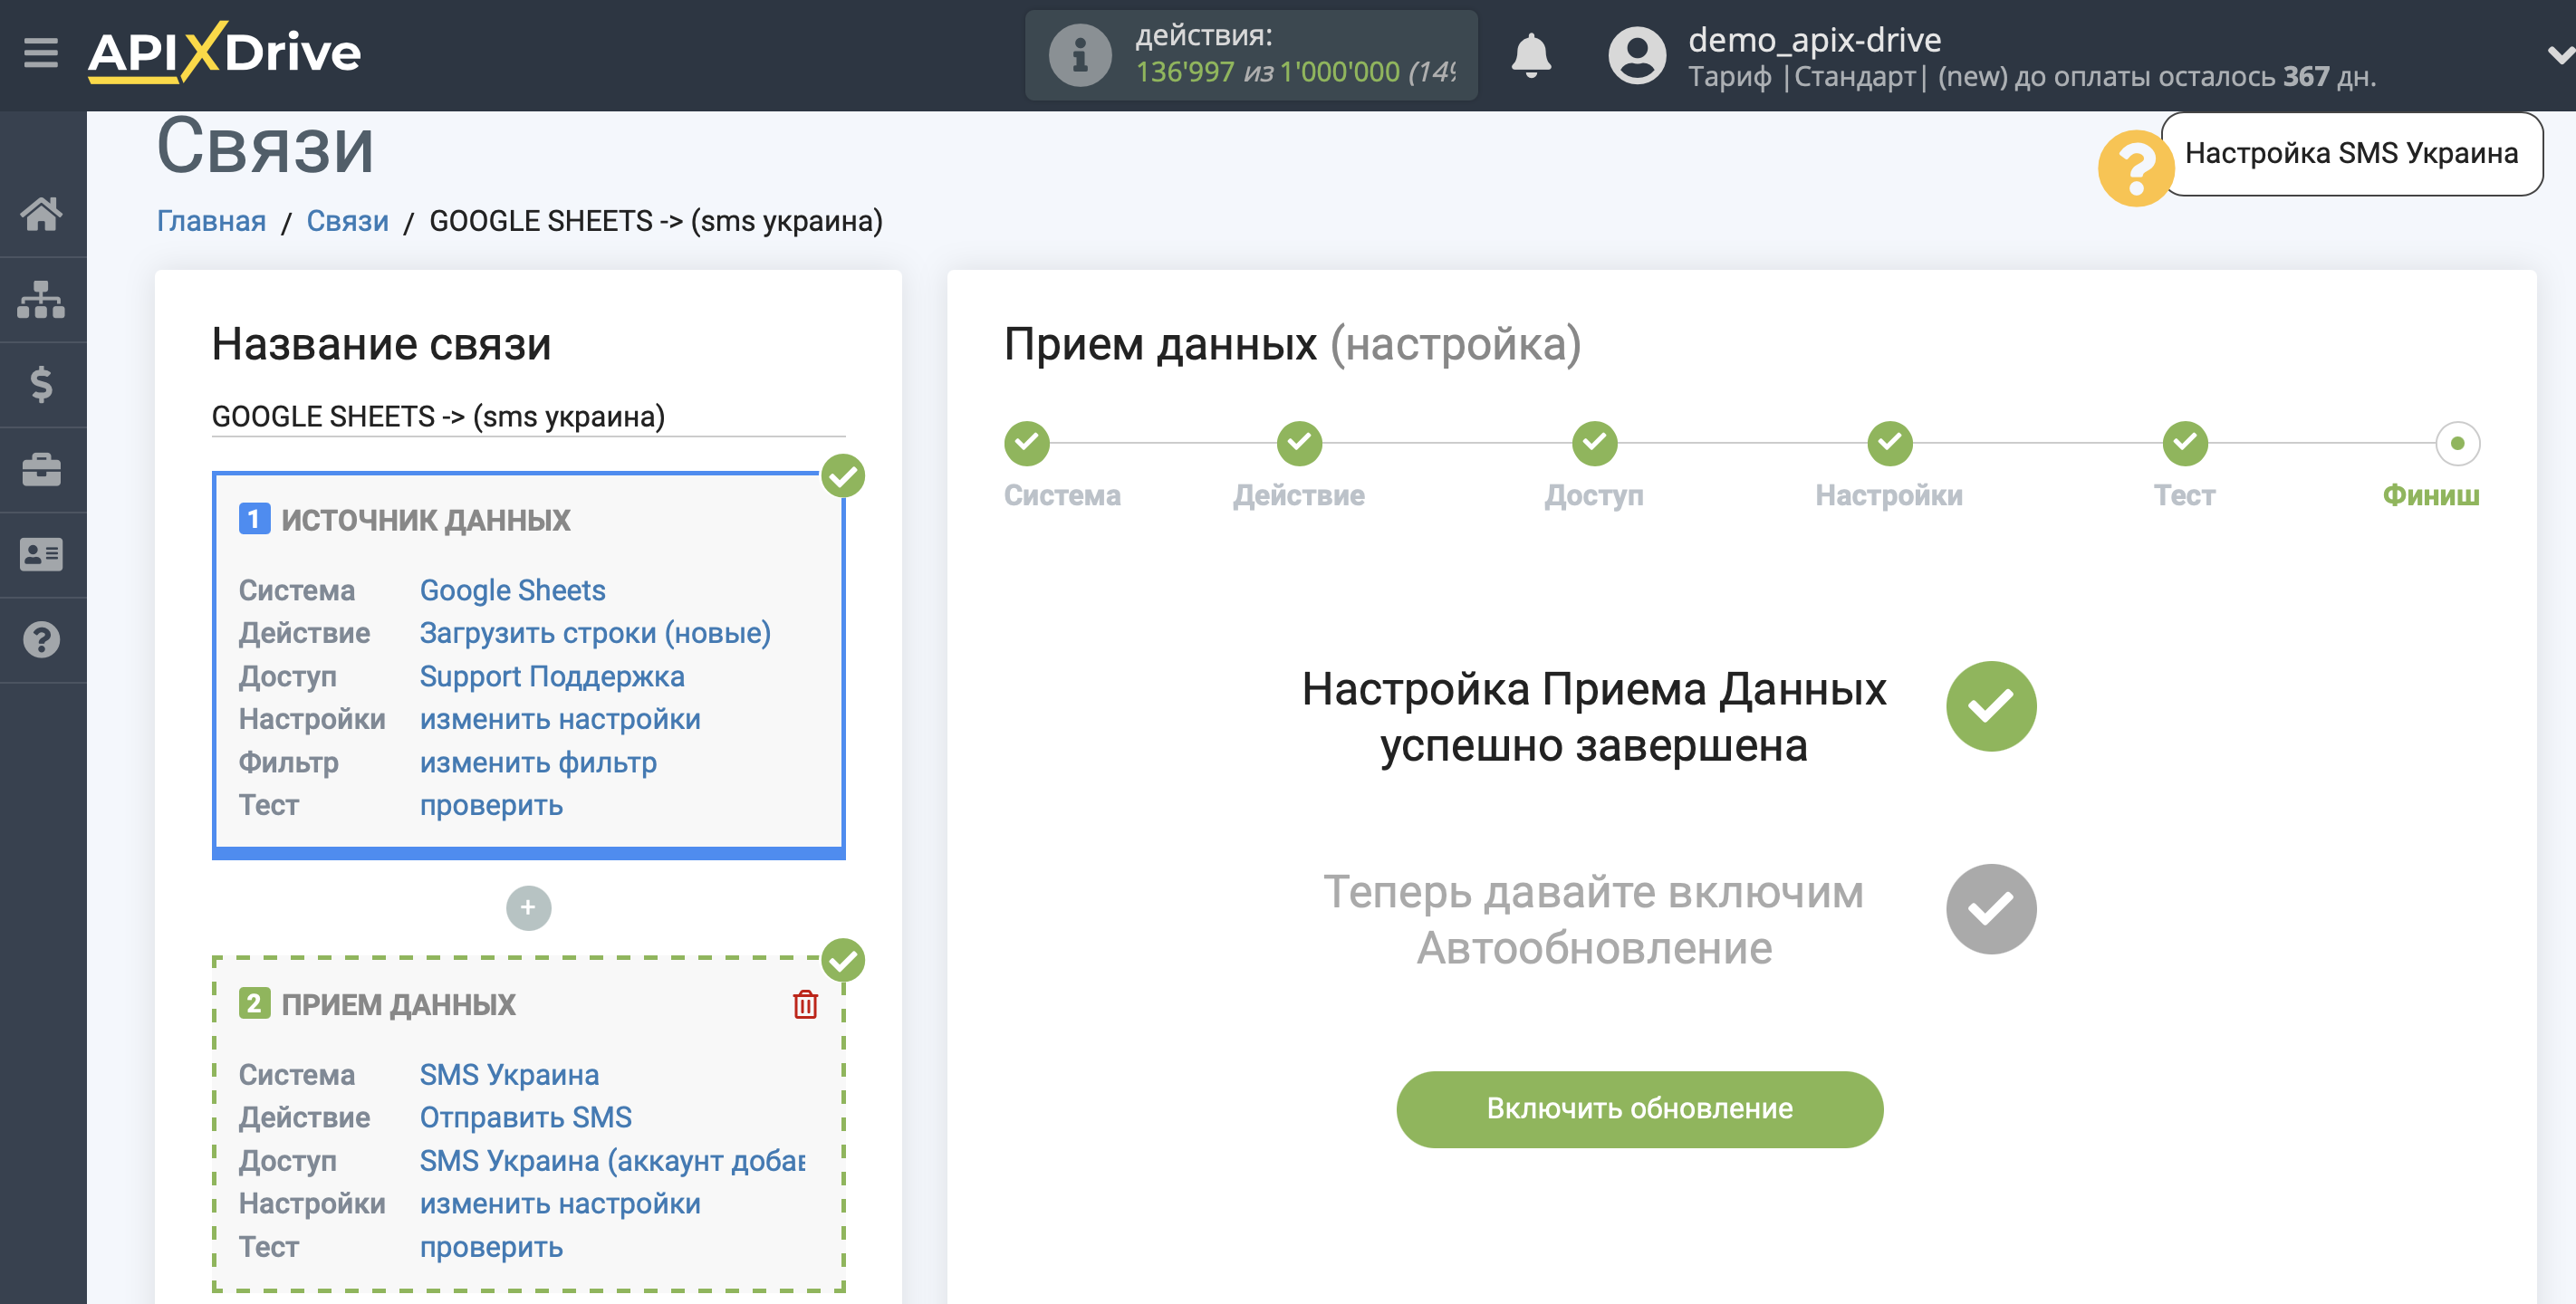 Настройка Приема данных в SMS Украина | Включение автообновления